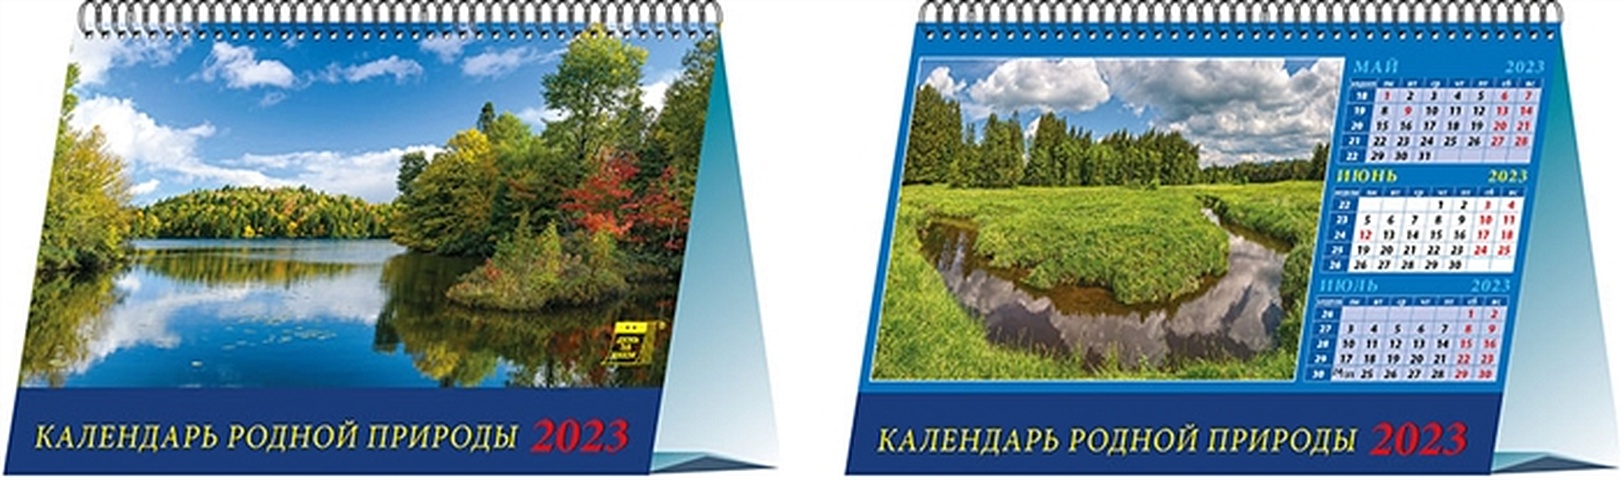 Календарь настольный на 2023 год Календарь родной природы